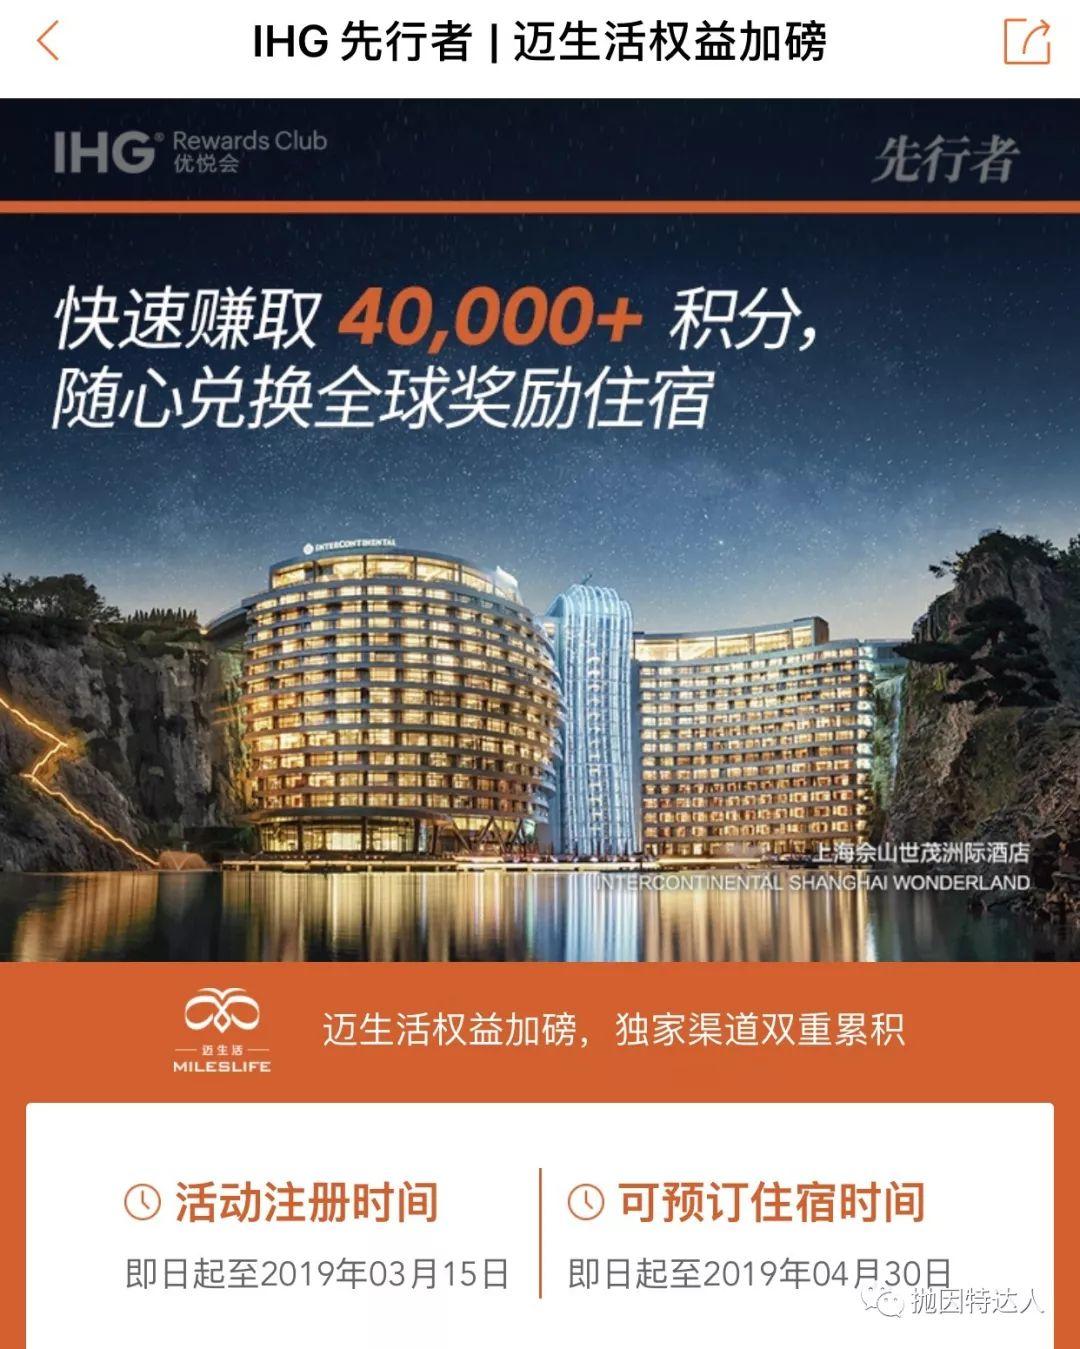 《超低成本入住豪华酒店 - 洲际酒店集团 (IHG) 2019年第一季度PointBreaks促销活动》